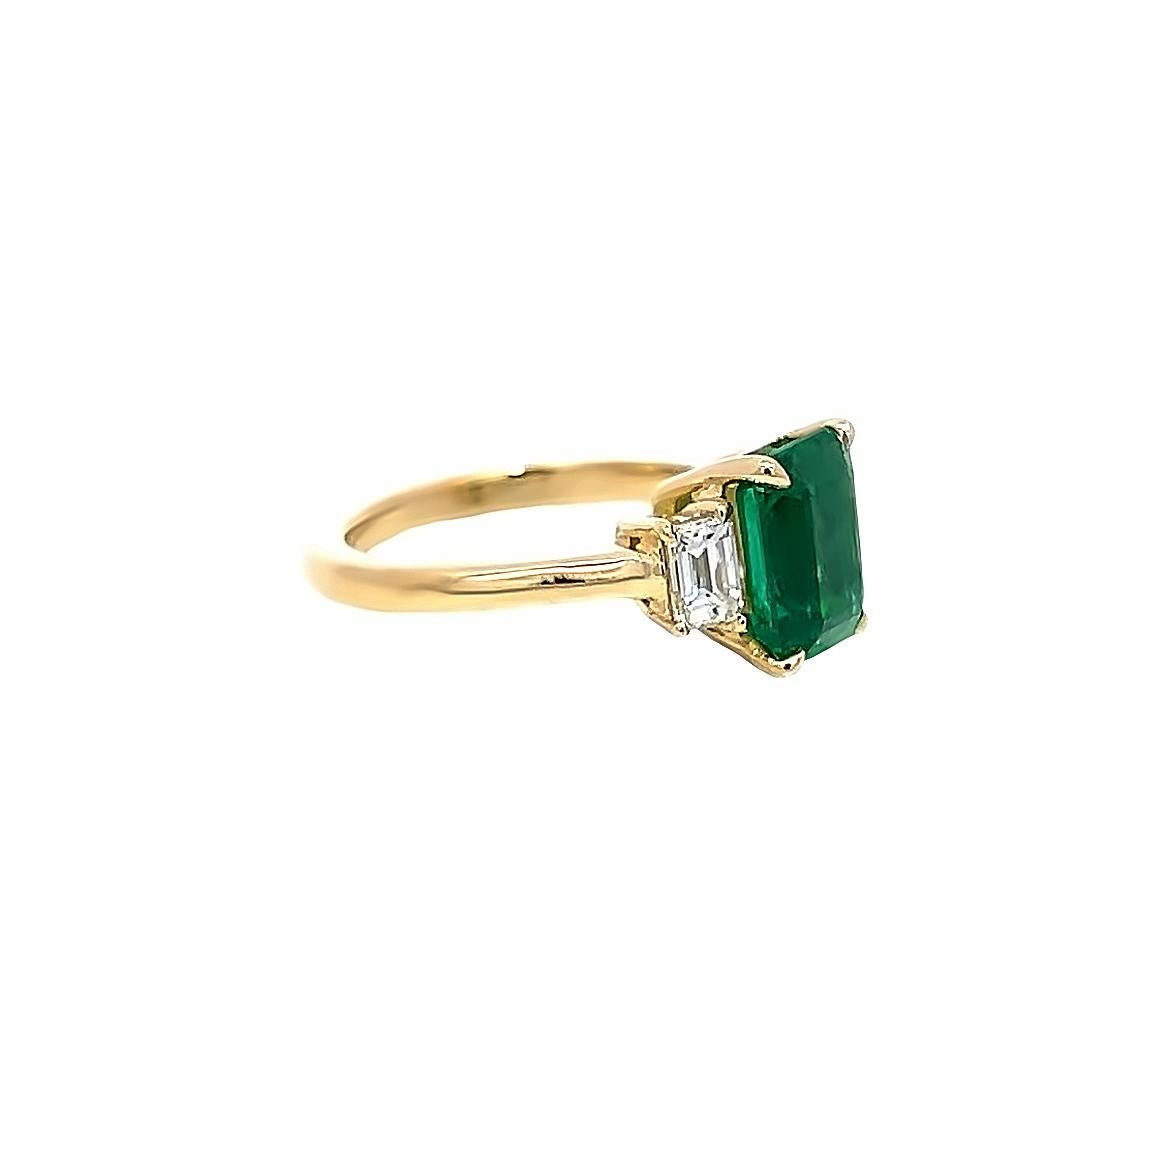 Dieser exquisite Ring ist mit einem wunderschönen achteckigen Smaragd besetzt, der aus Sambia stammt und von GIA für seine Transparenz zertifiziert wurde. Der Smaragd wird von zwei Diamanten mit einem Gewicht von je 0,40 Karat begleitet, was ein